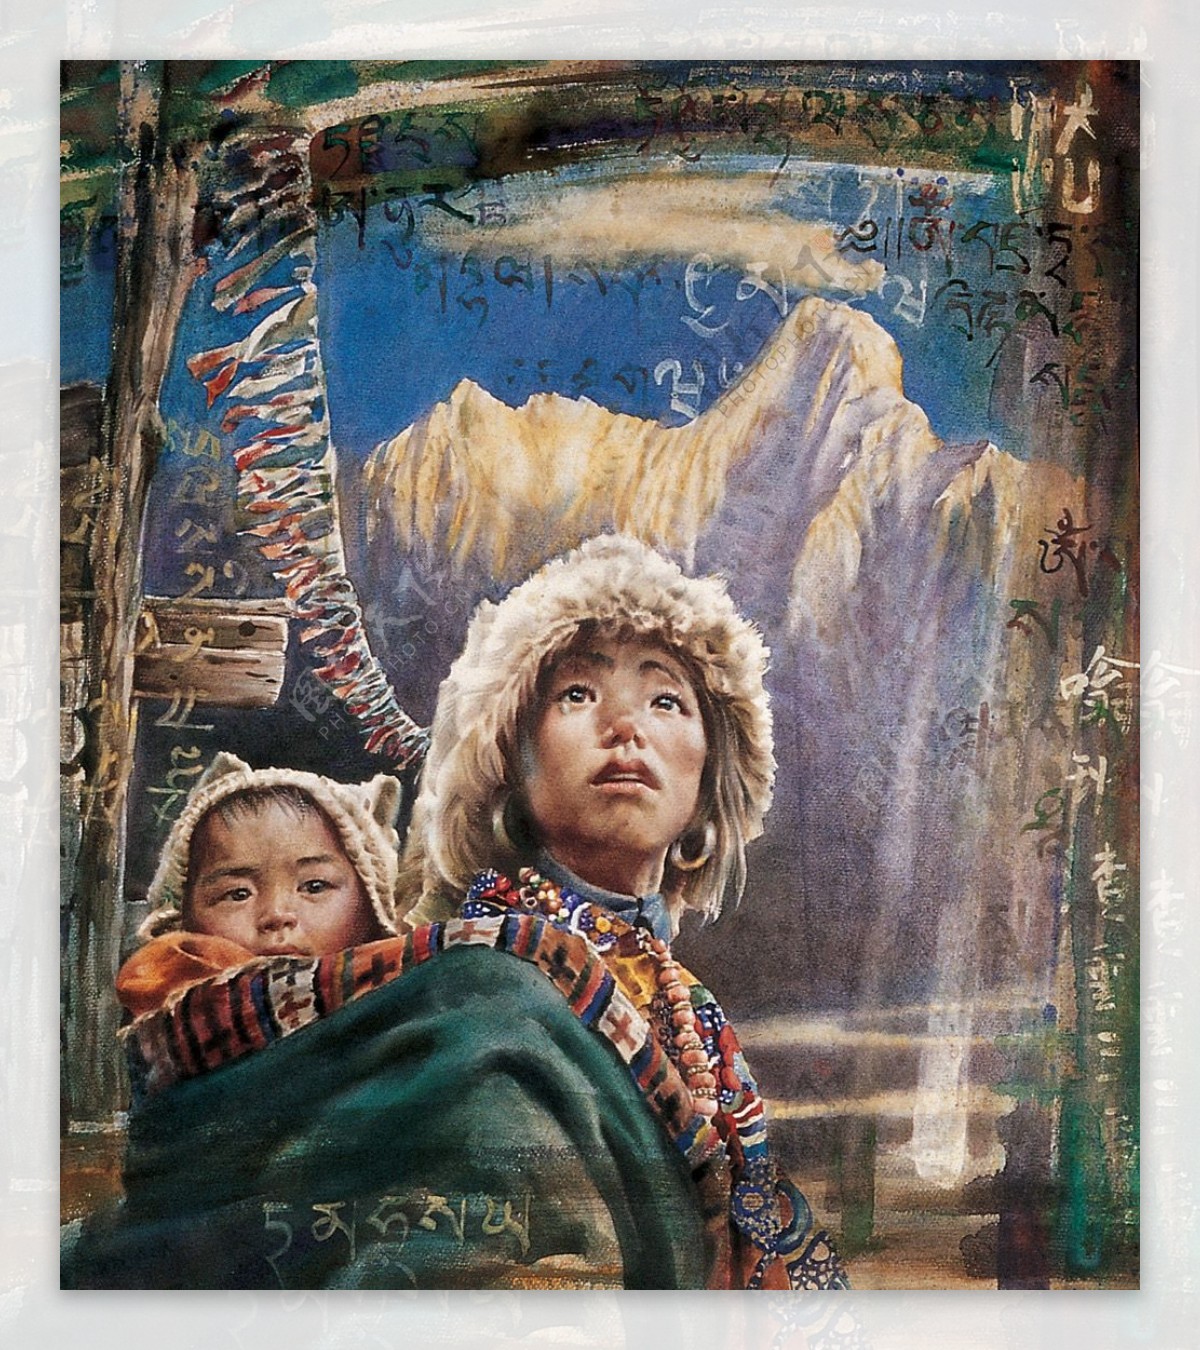 藏族人物水彩画作品图片